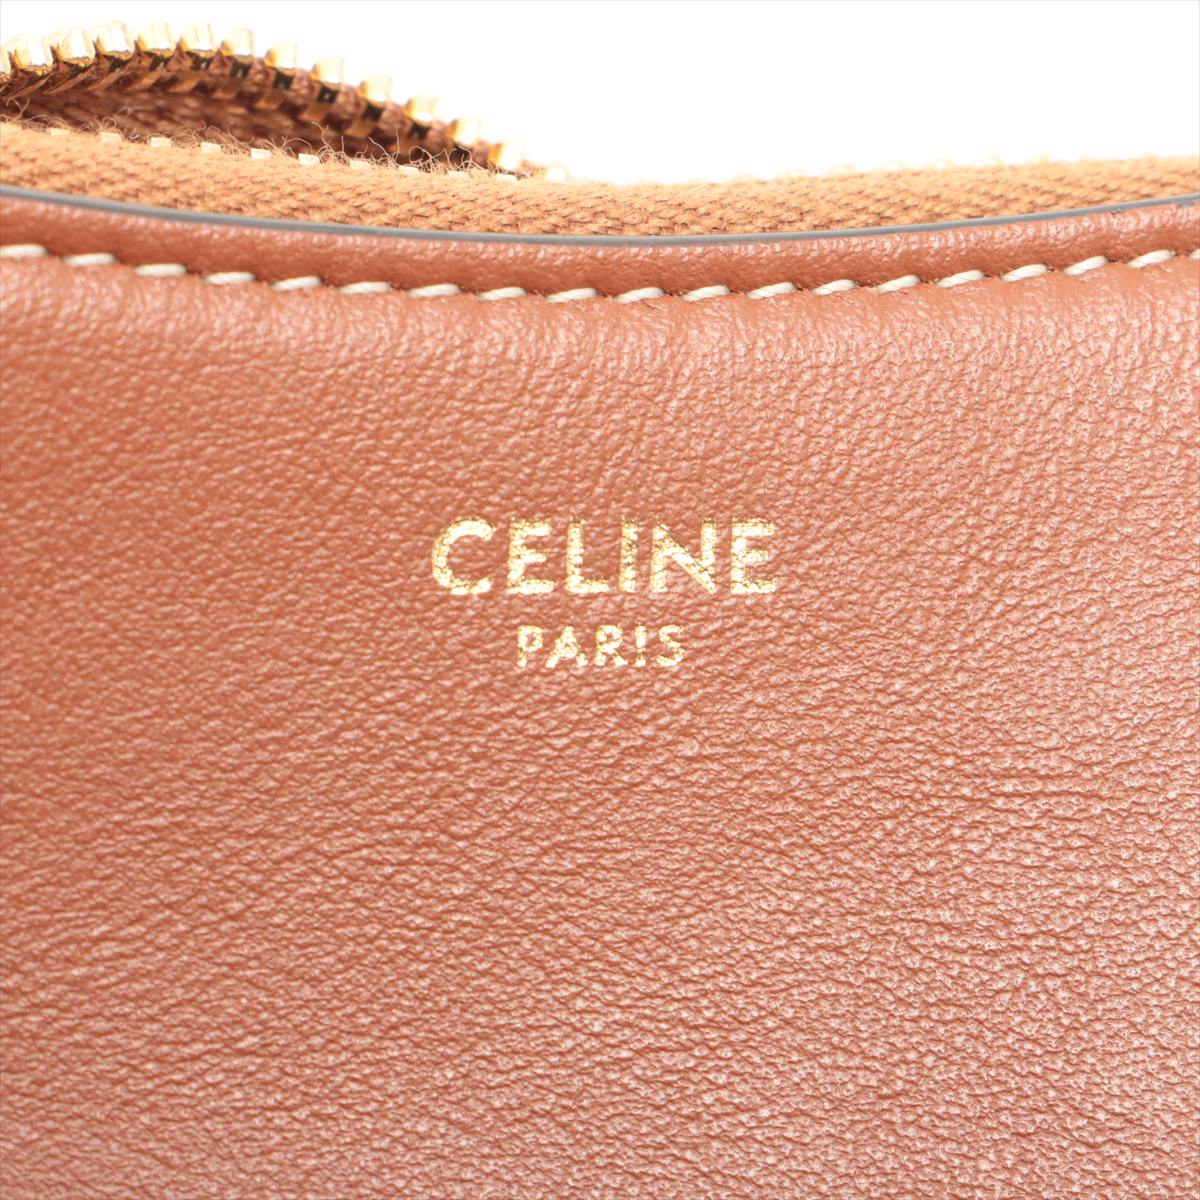 Ava cloth handbag Celine Brown in Cloth - 36197613